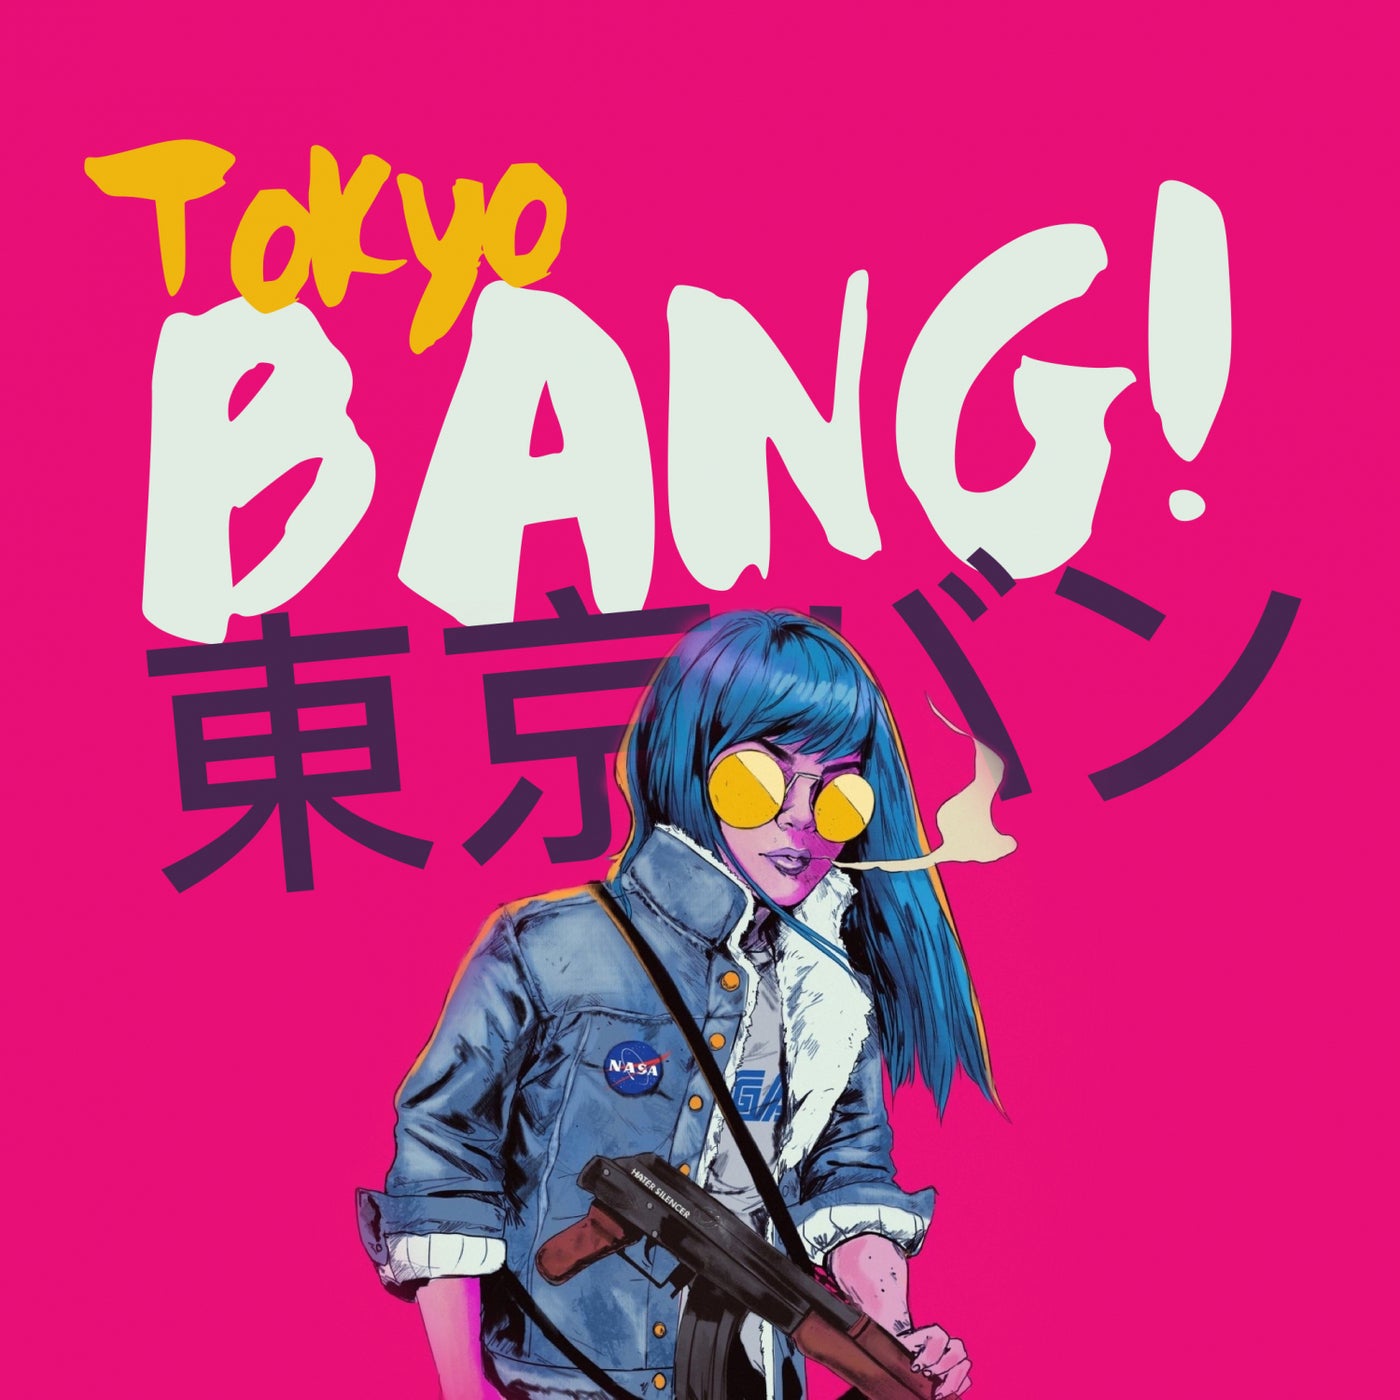 Tokyo Bang!